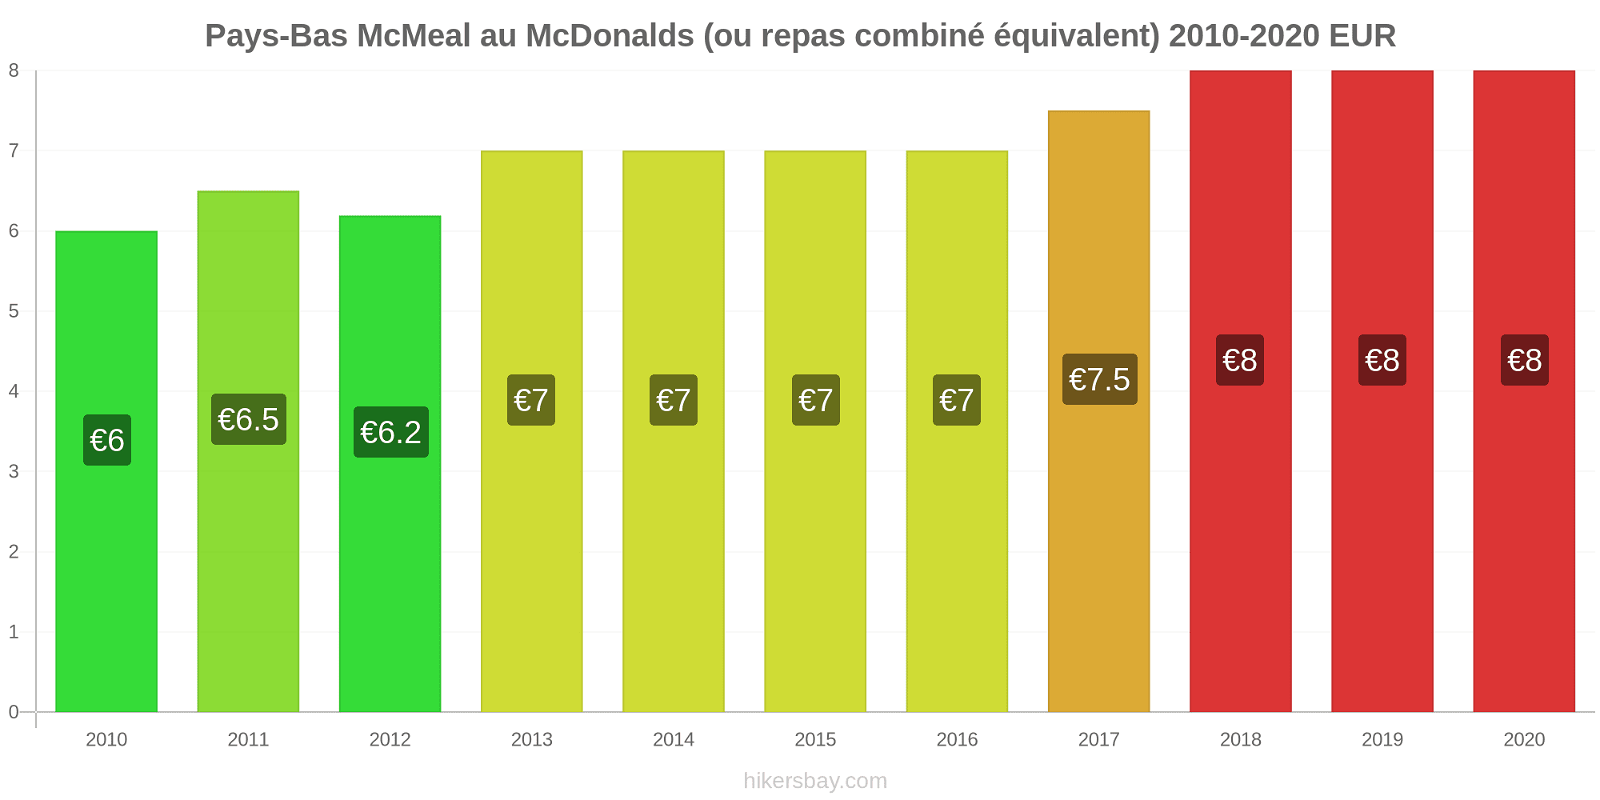 Pays-Bas changements de prix McMeal à McDonald ' s (ou Combo équivalent tourteau) hikersbay.com